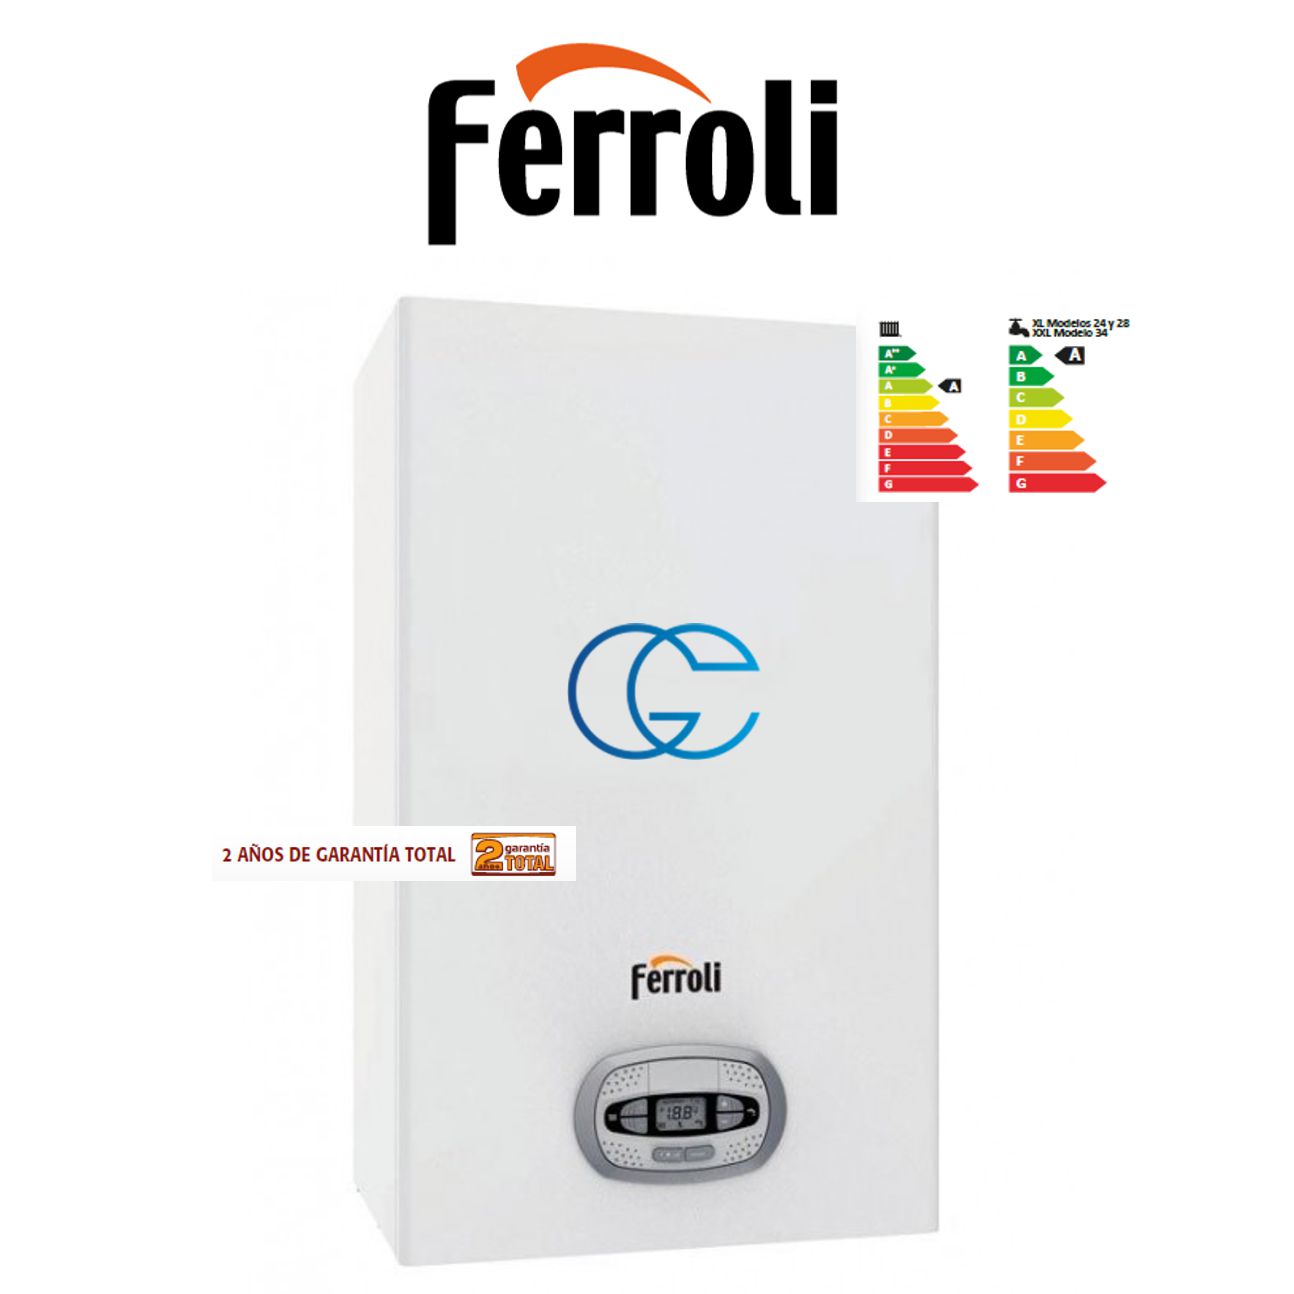 Ferroli presenta su nueva gama de termos eléctricos